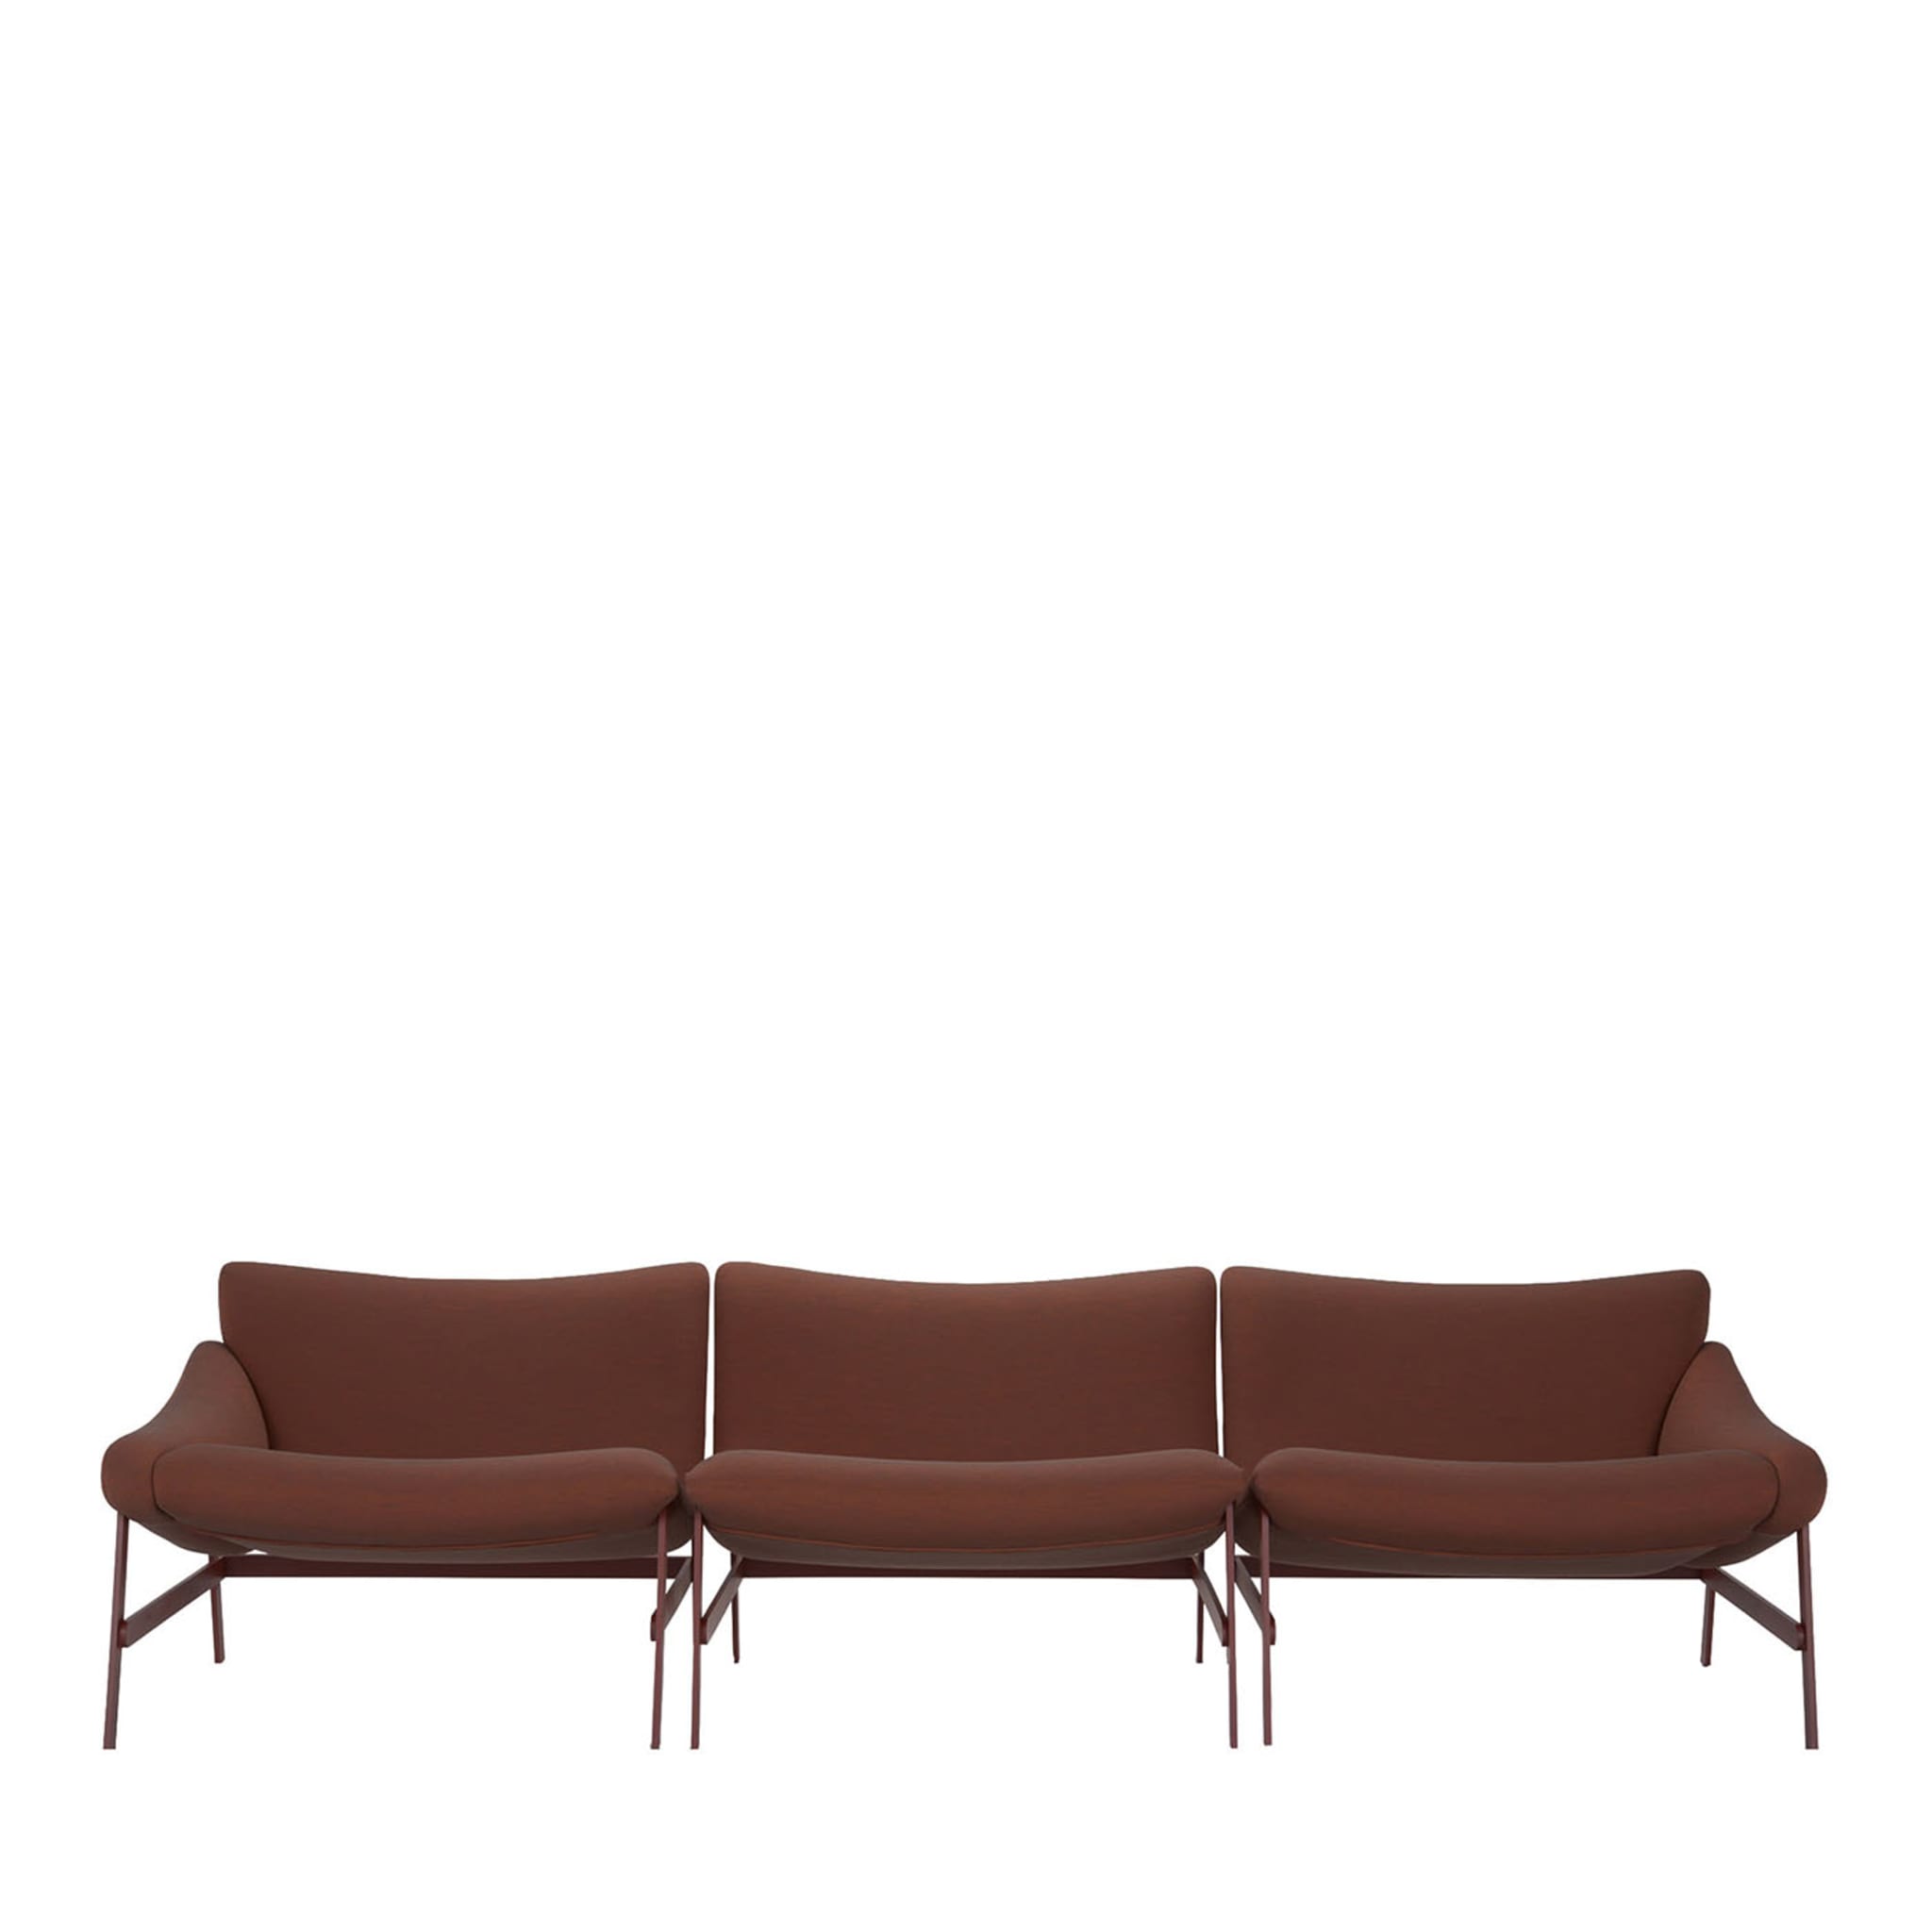 Hammock 3-Seater Brown Sofa - Main view